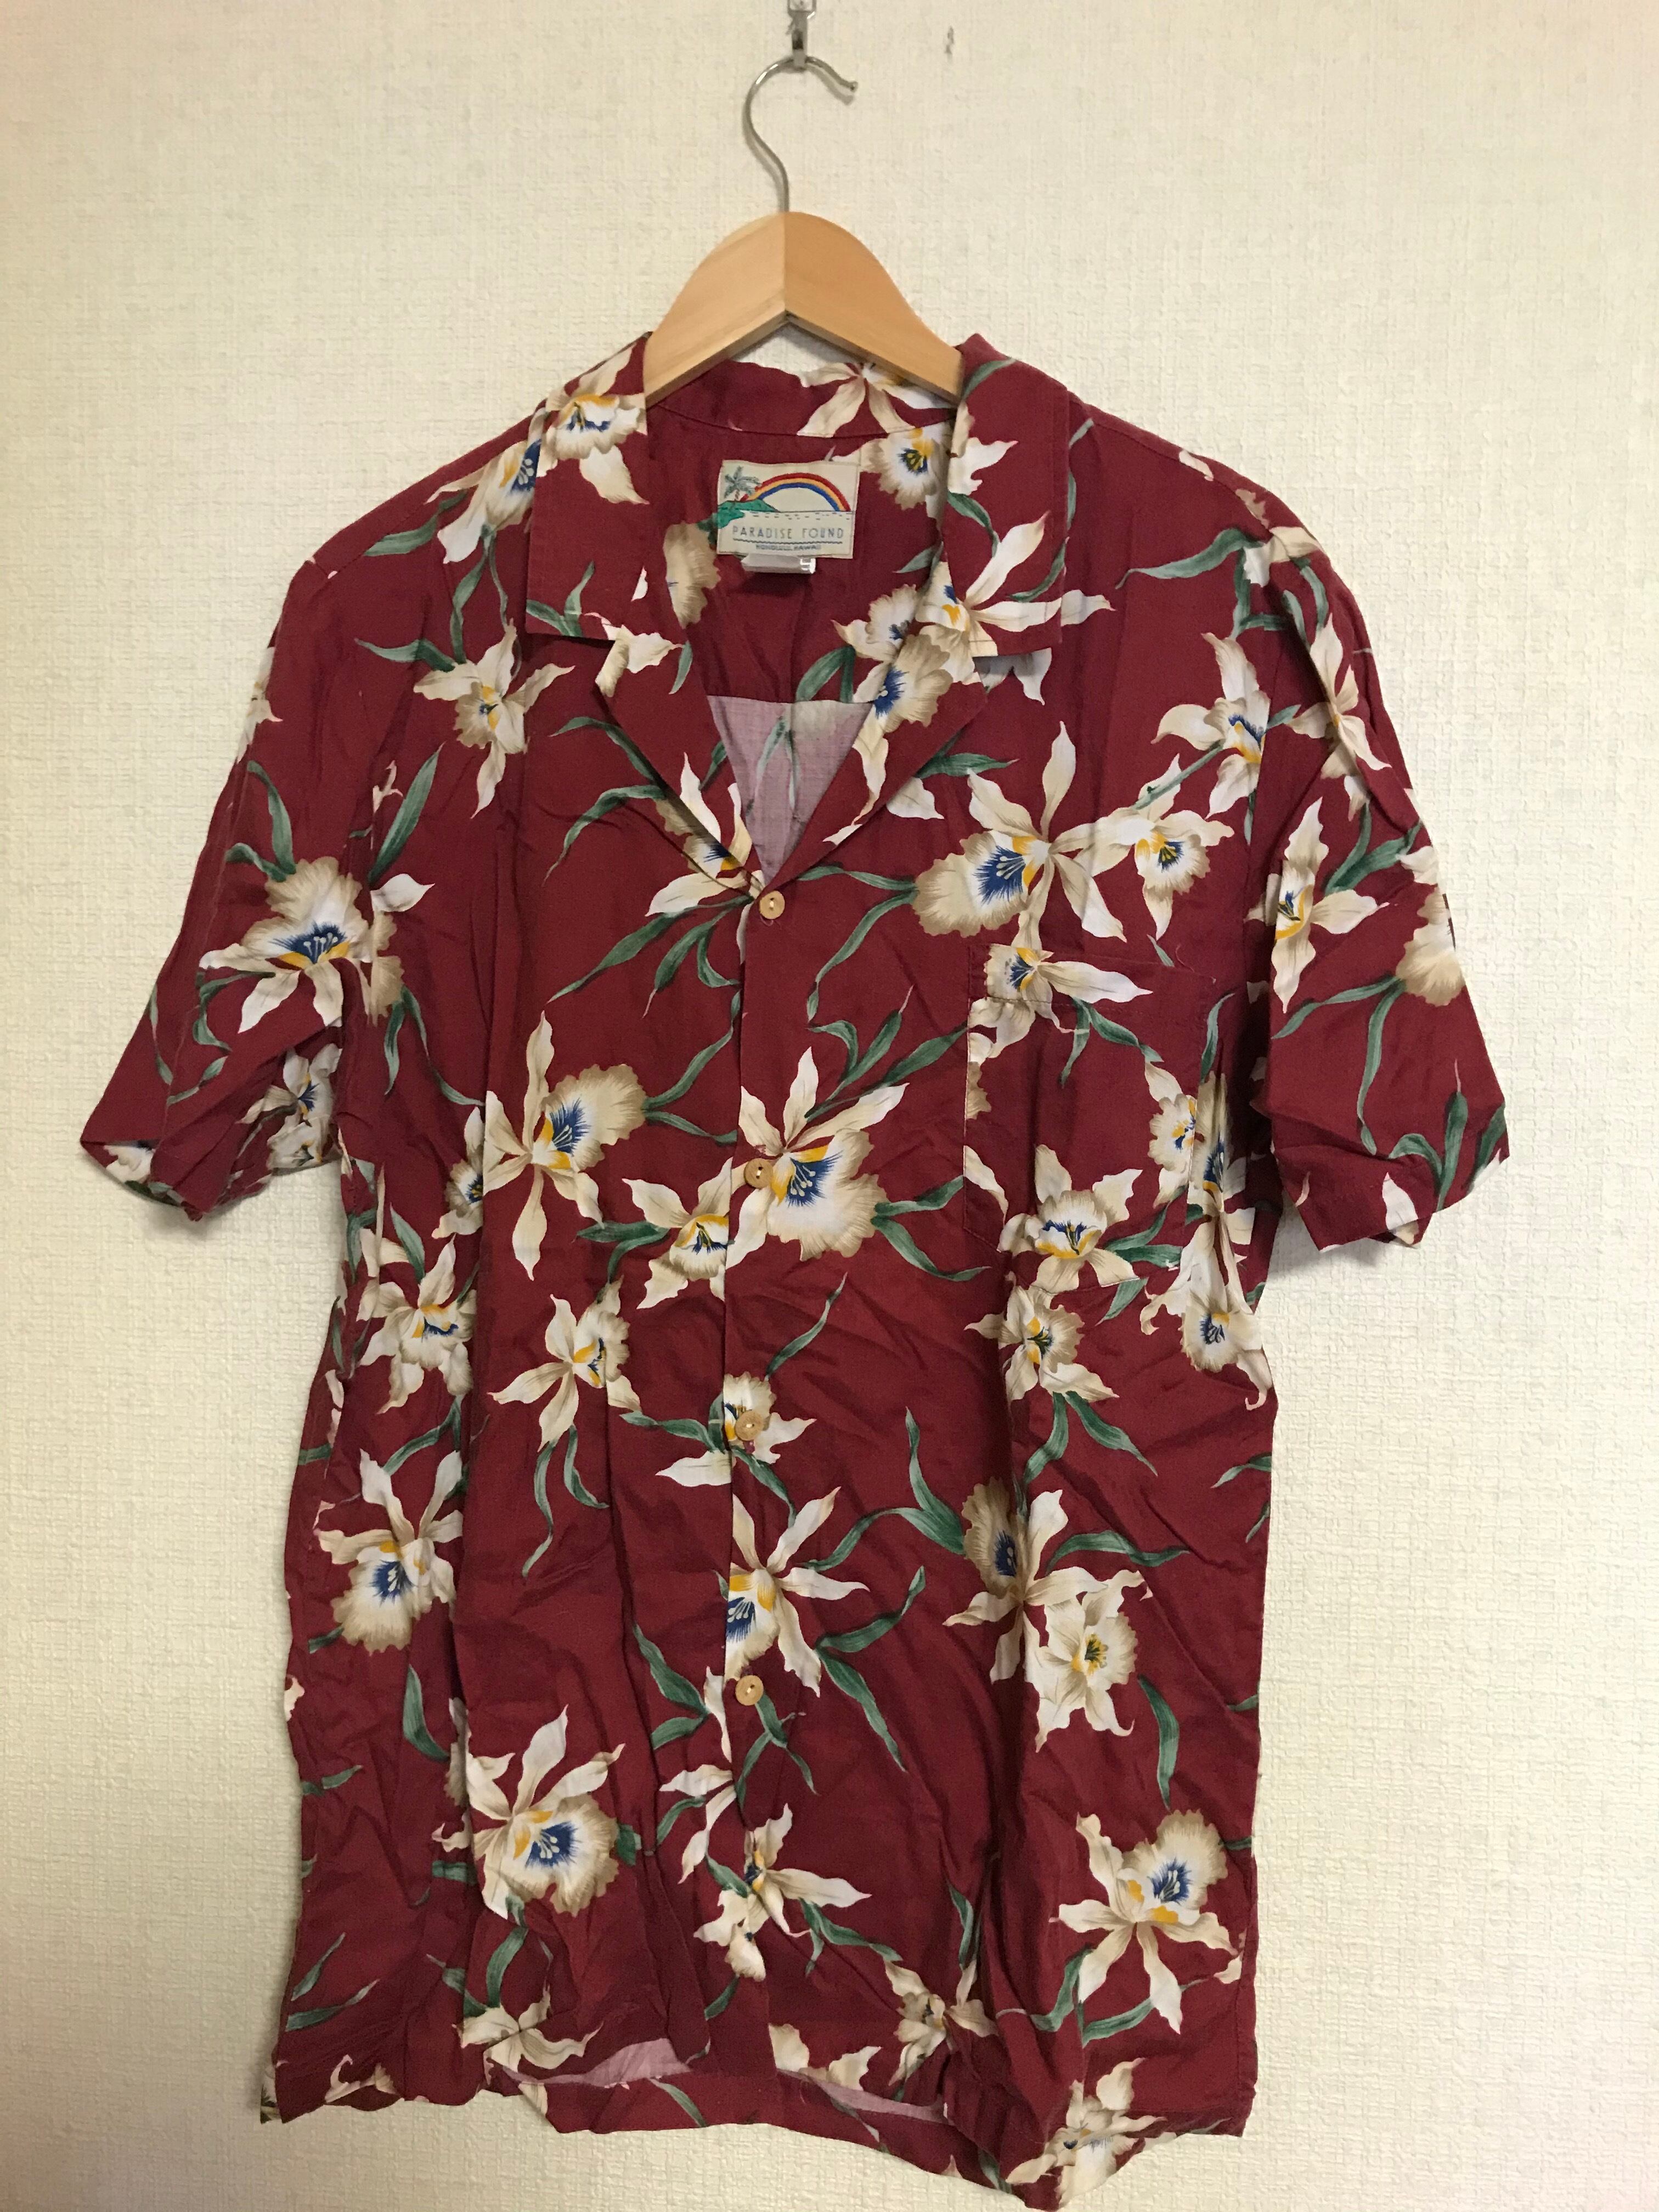 【激レア‼︎】Paradise Found Hawaii◎90s アロハシャツ